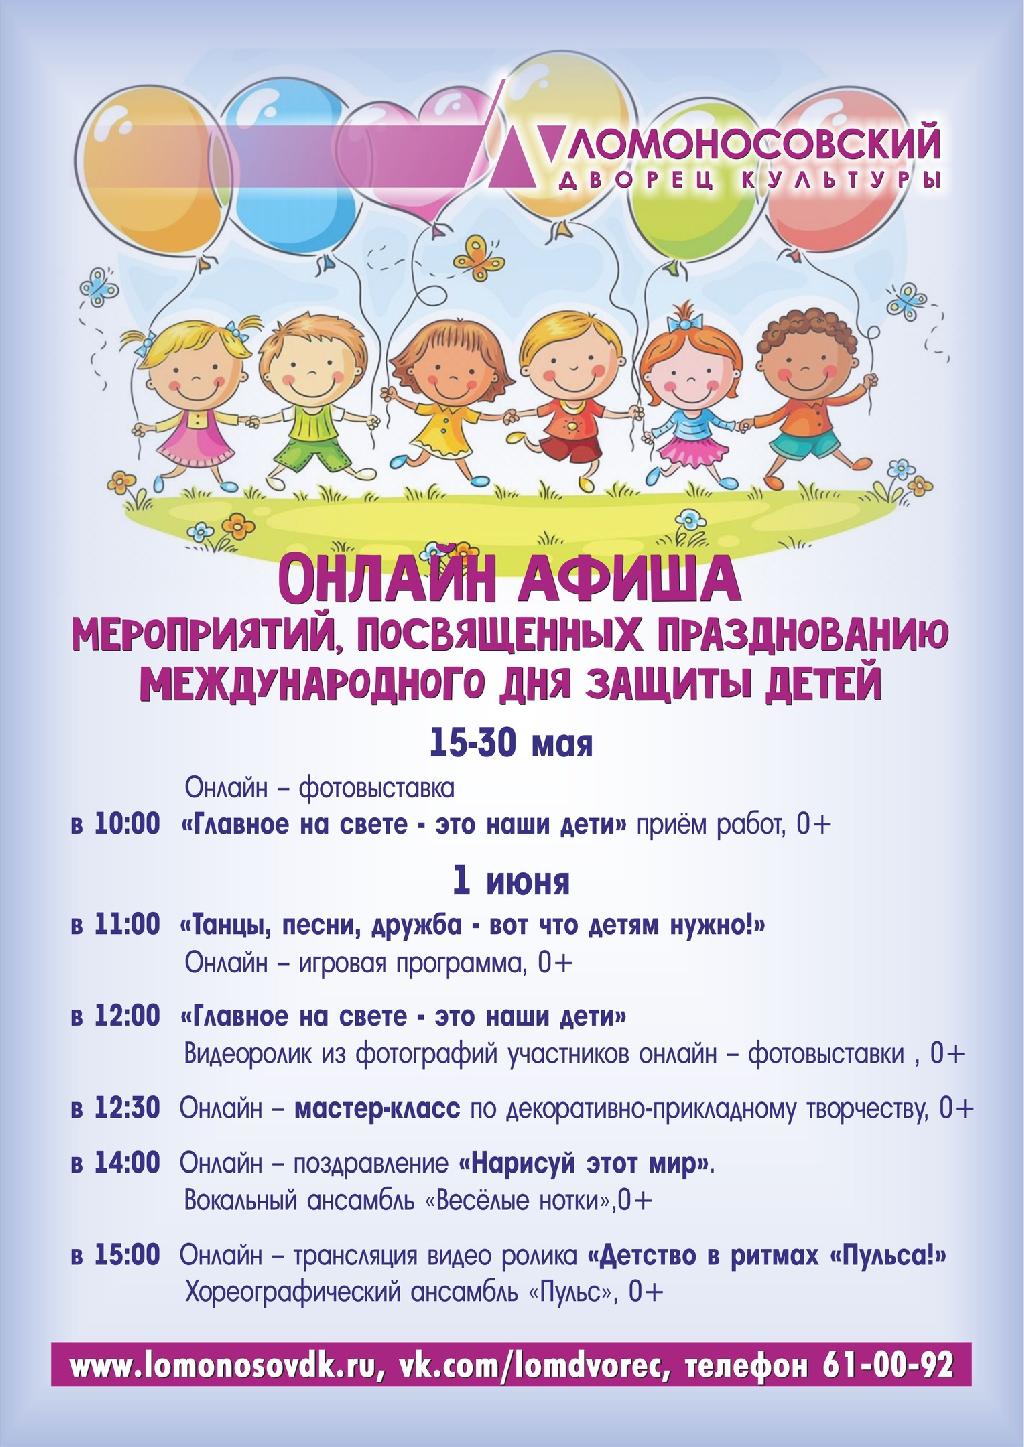 К Международному Дню защиты детей Ломоносовский Дворец культуры подготовил разнообразную программу